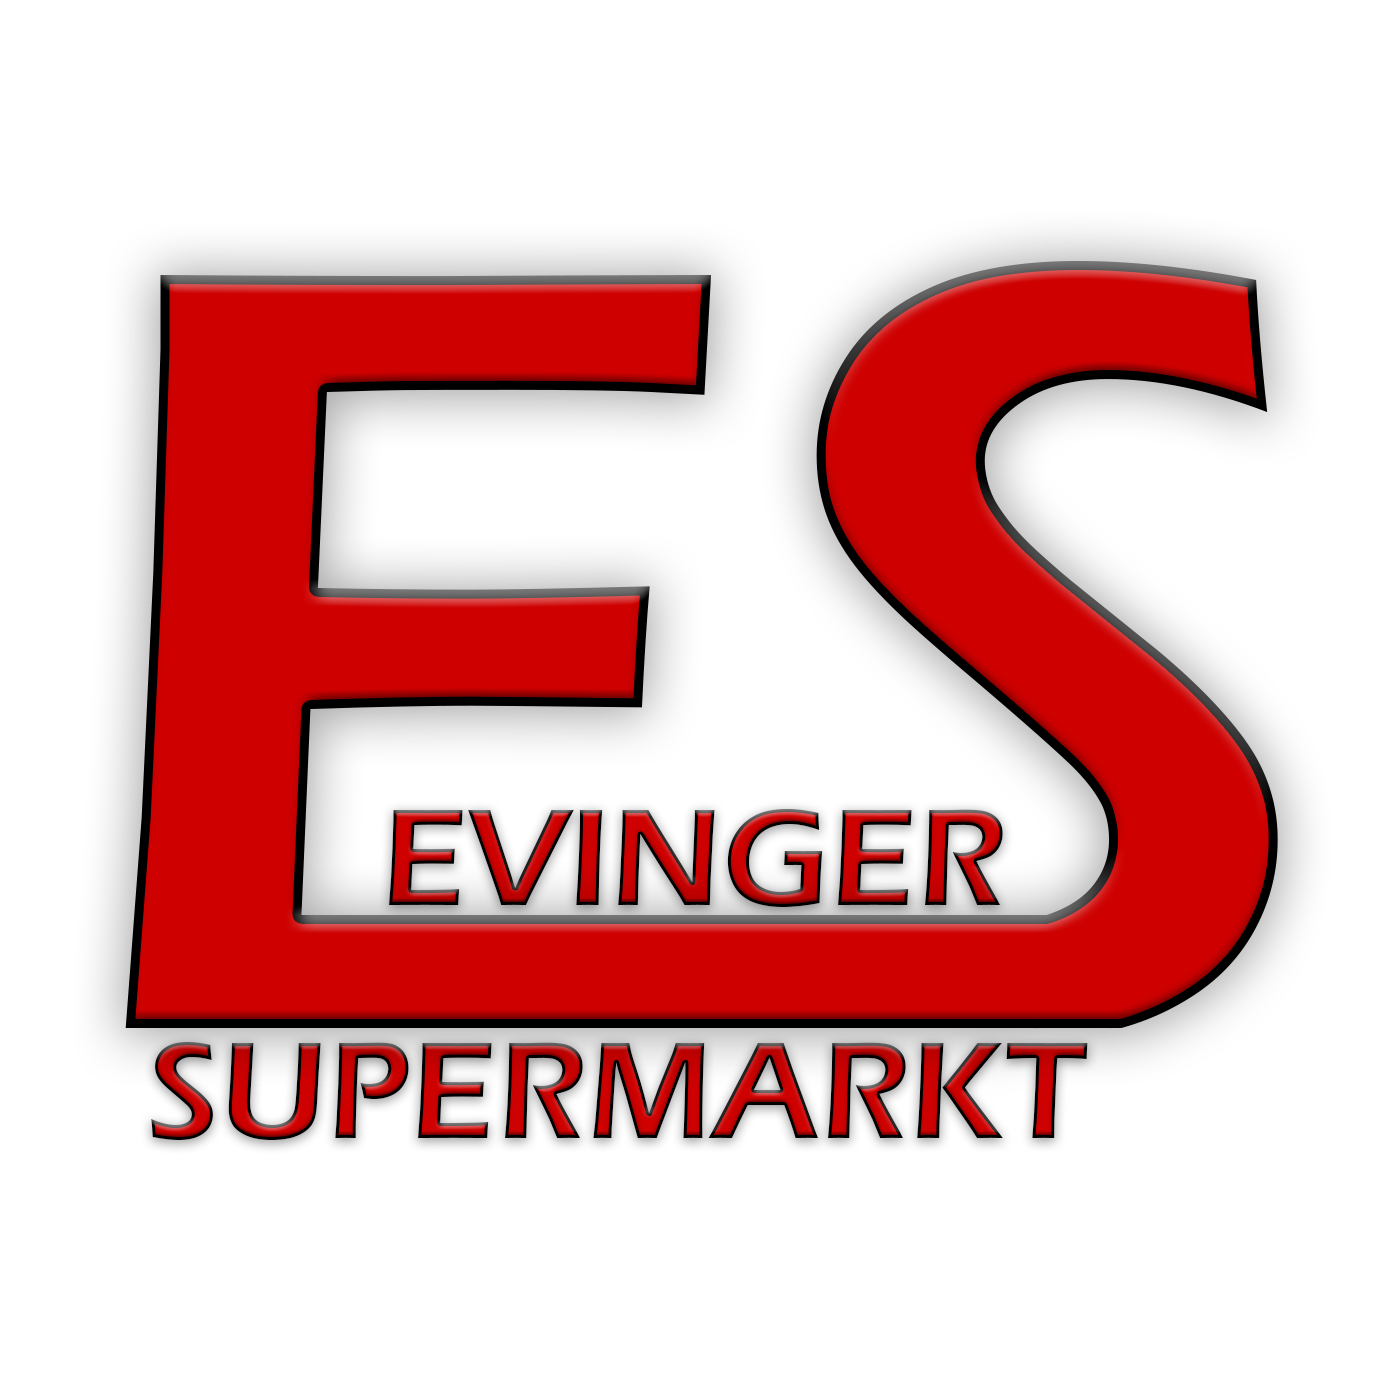 Bild 1 DHL Paketshop Evinger Supermarkt GmbH in Dortmund